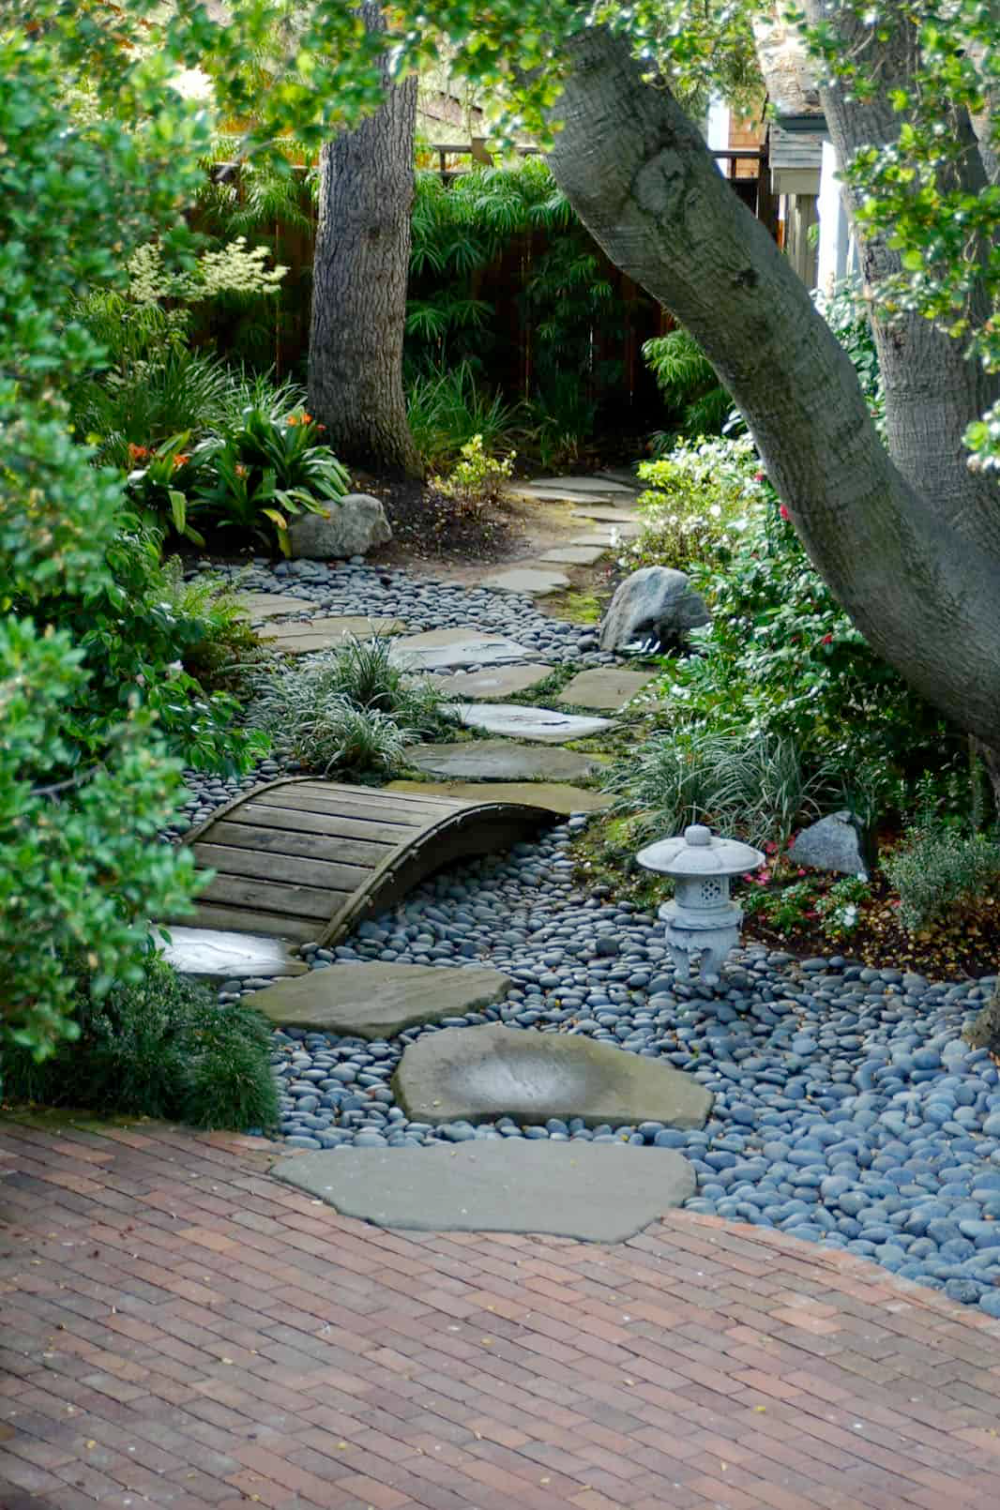 Creating a Peaceful Haven: Zen Garden Design Tips